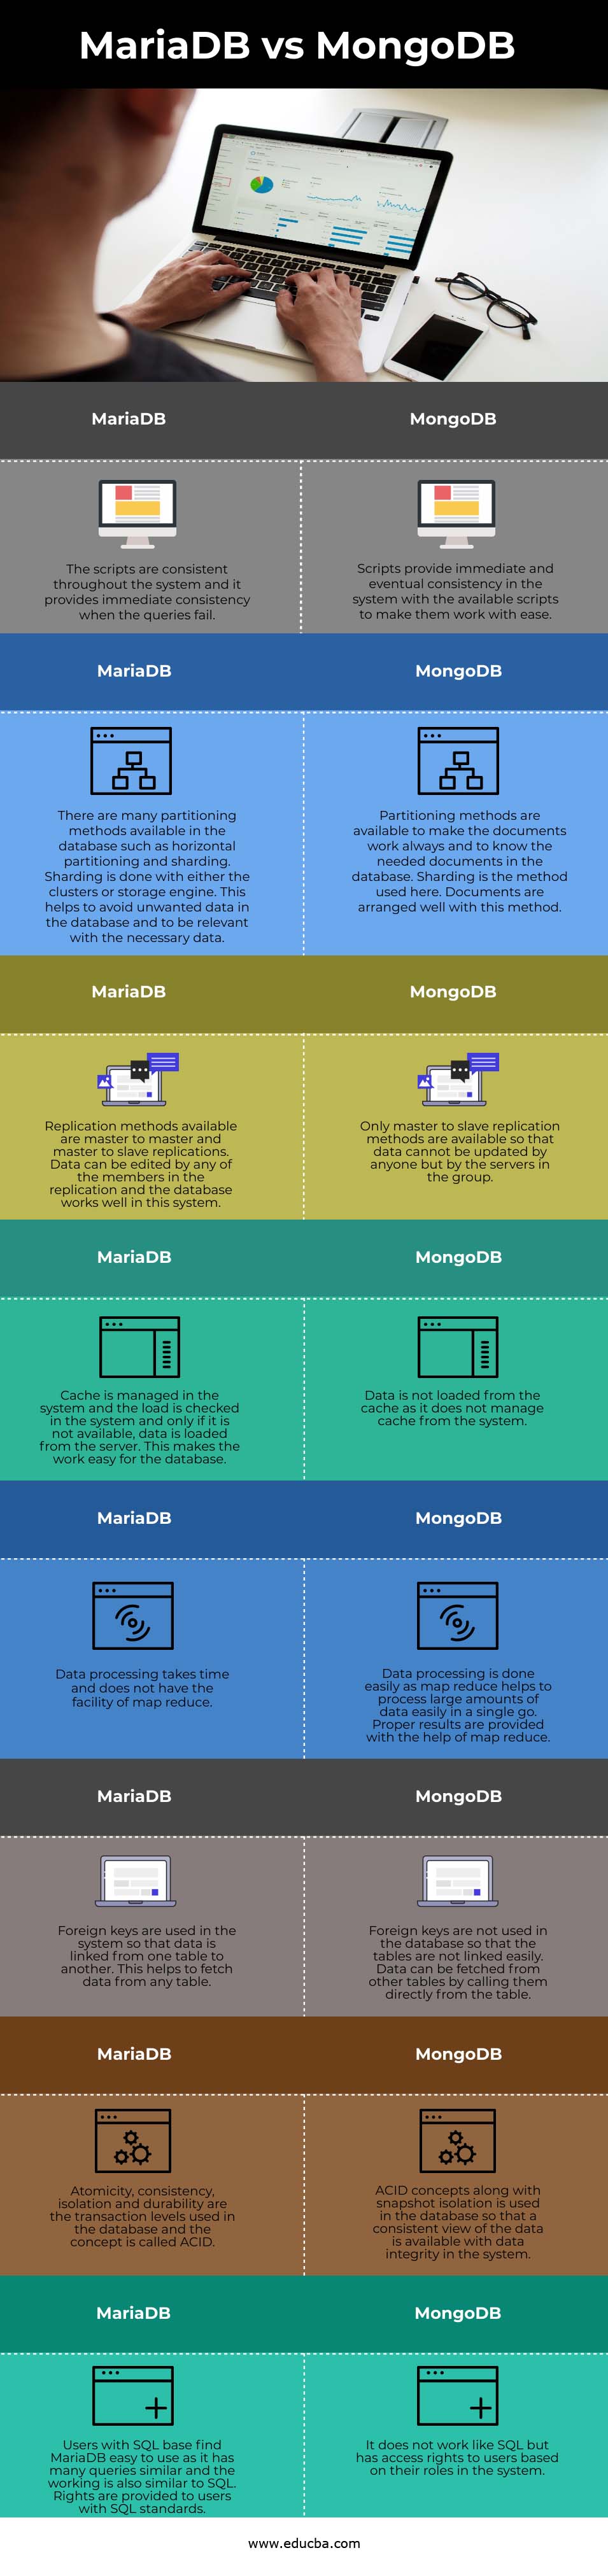 MariaDB vs MongoDB info